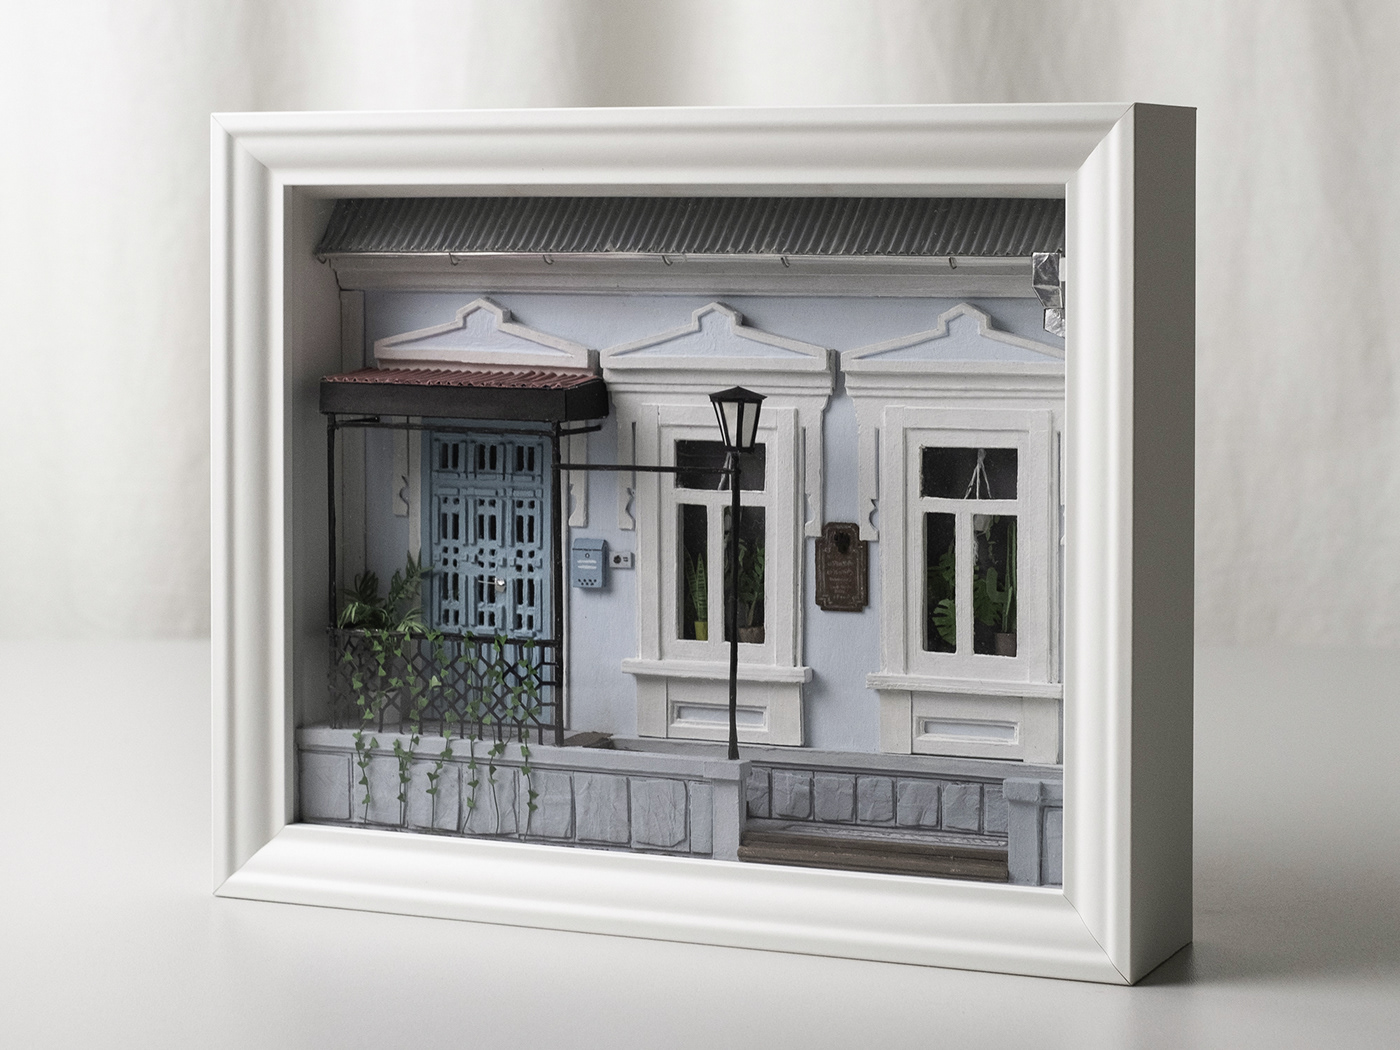 3D architecture Diorama exterior house Interior